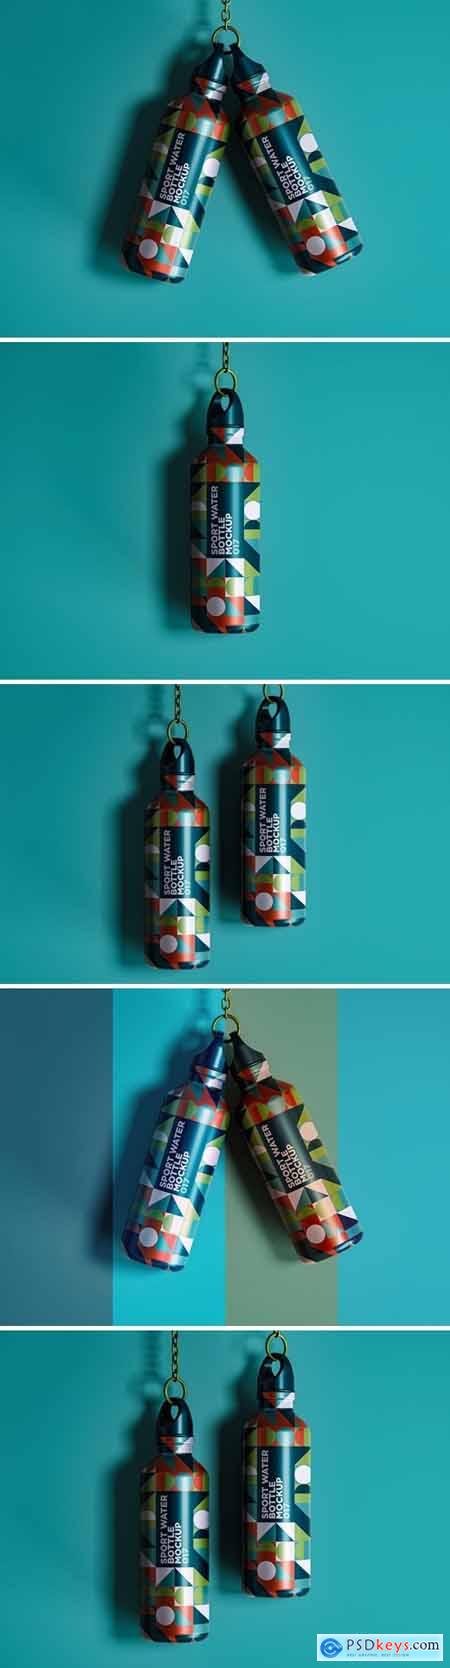 Sport Water Bottle Mockup 017